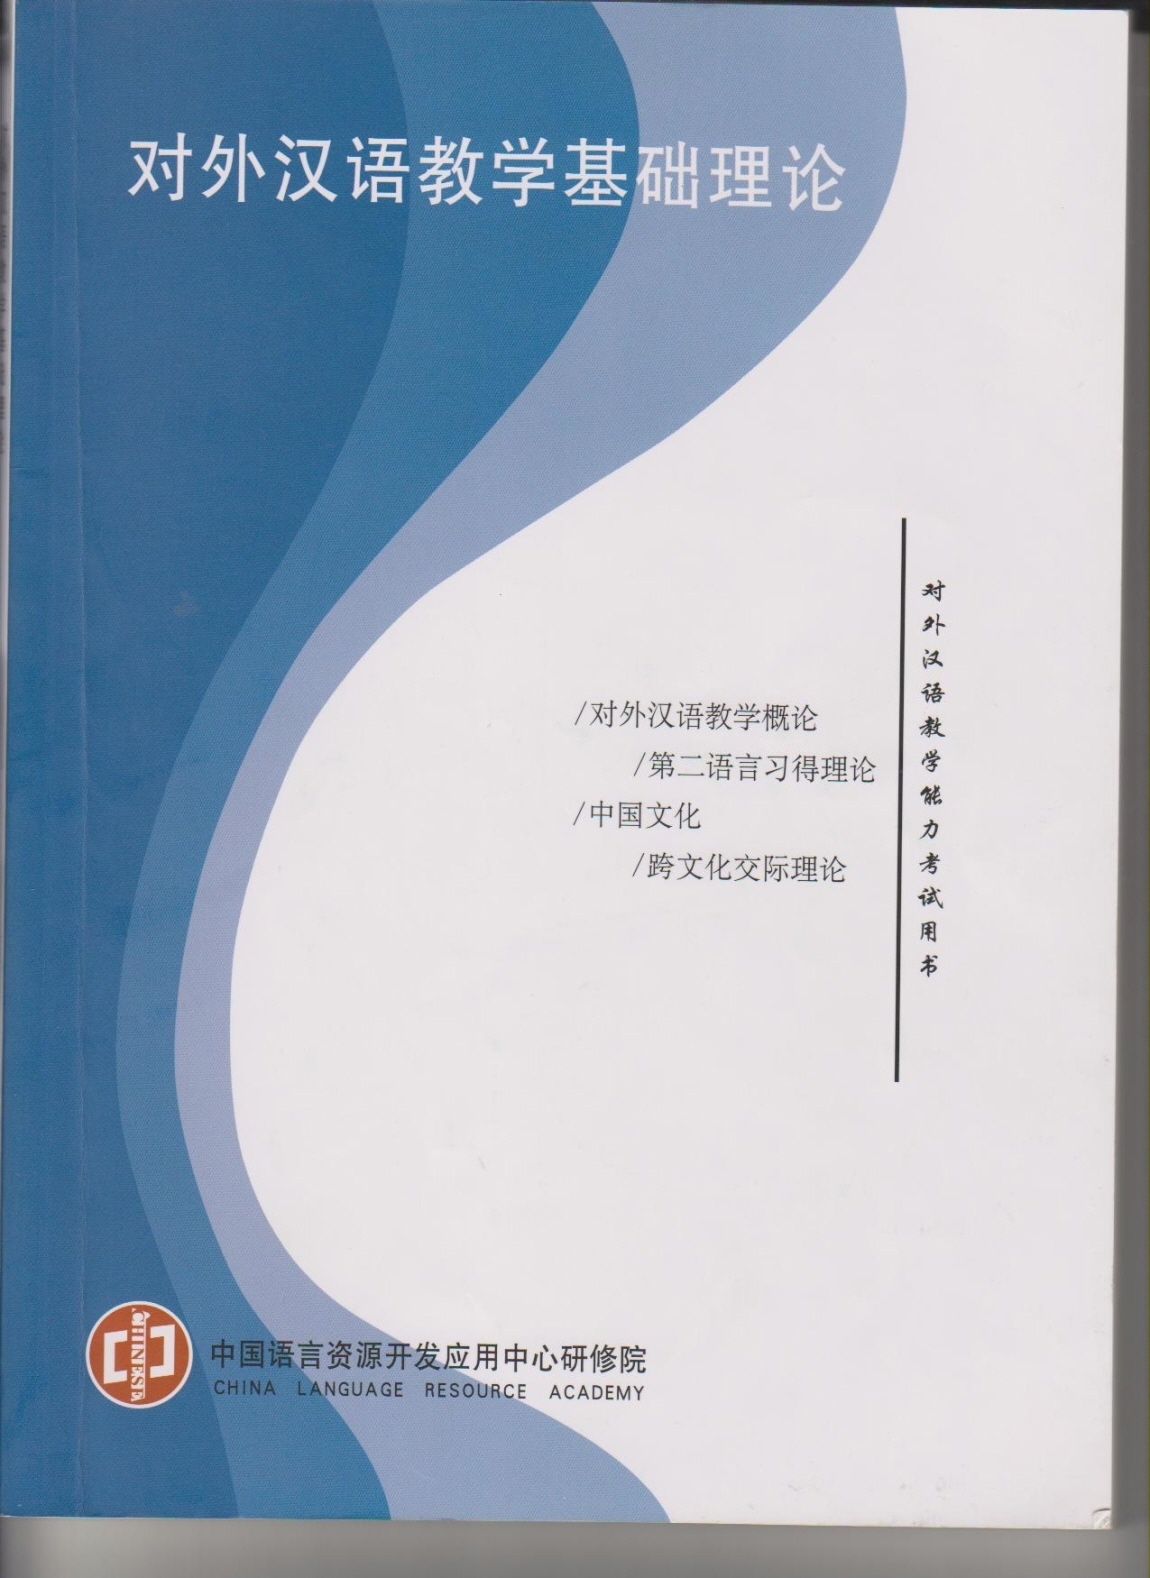 국제한어교사자격교과서(중)